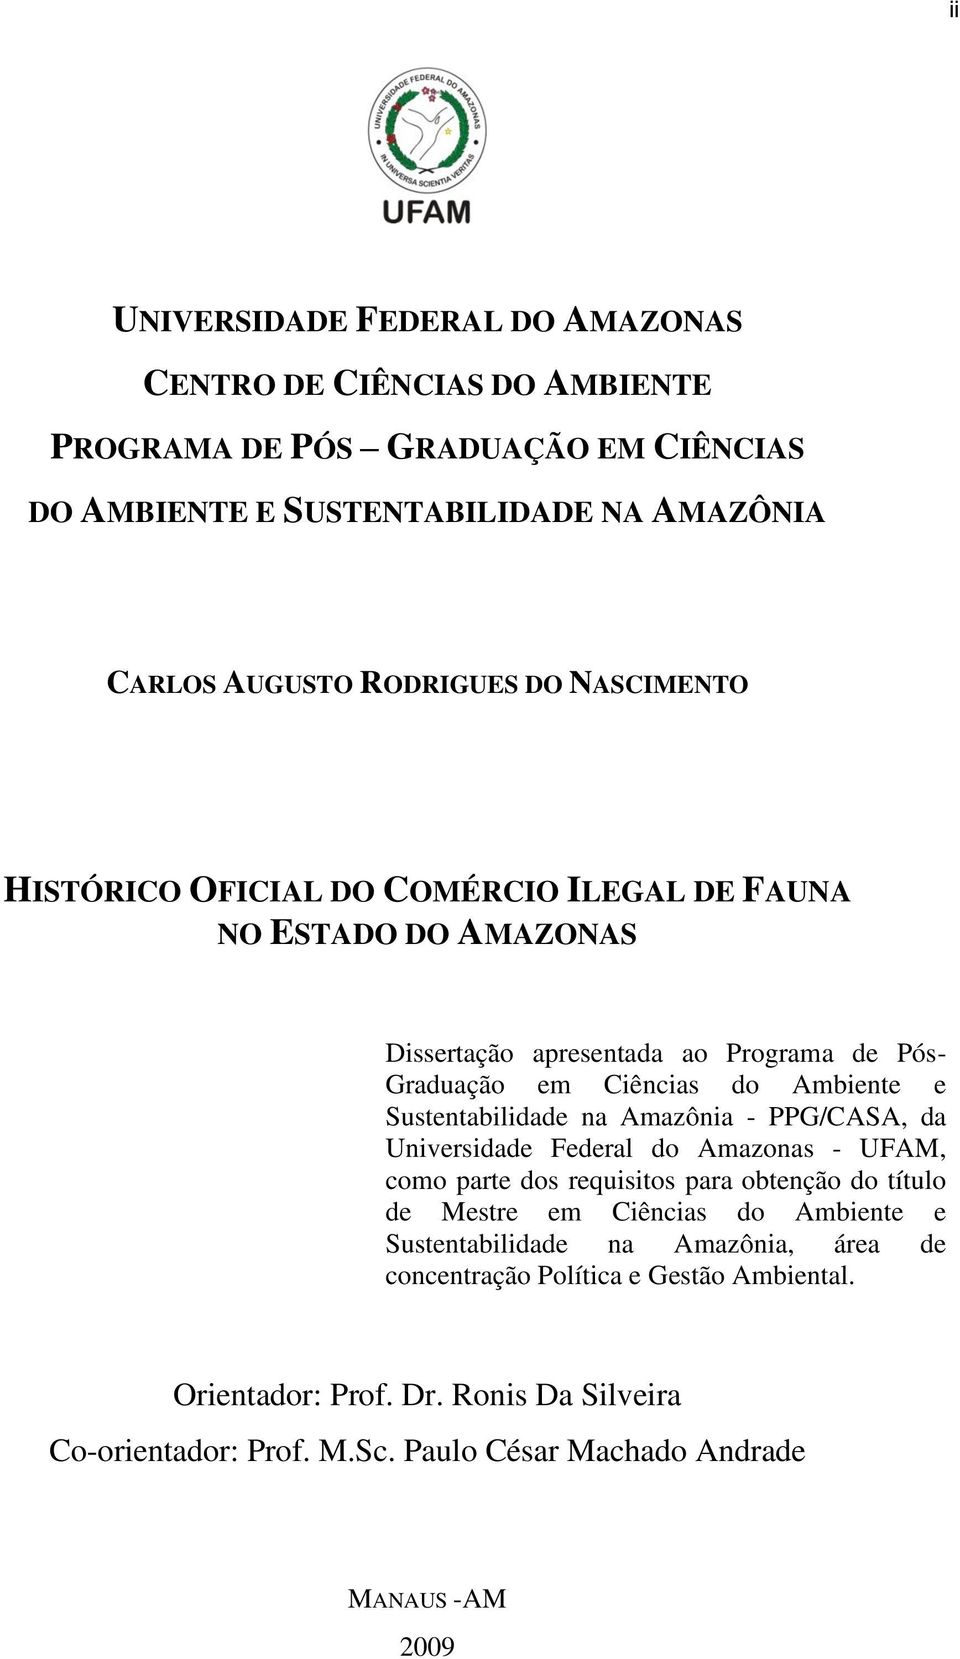 Sustentabilidade na Amazônia - PPG/CASA, da Universidade Federal do Amazonas - UFAM, como parte dos requisitos para obtenção do título de Mestre em Ciências do Ambiente e